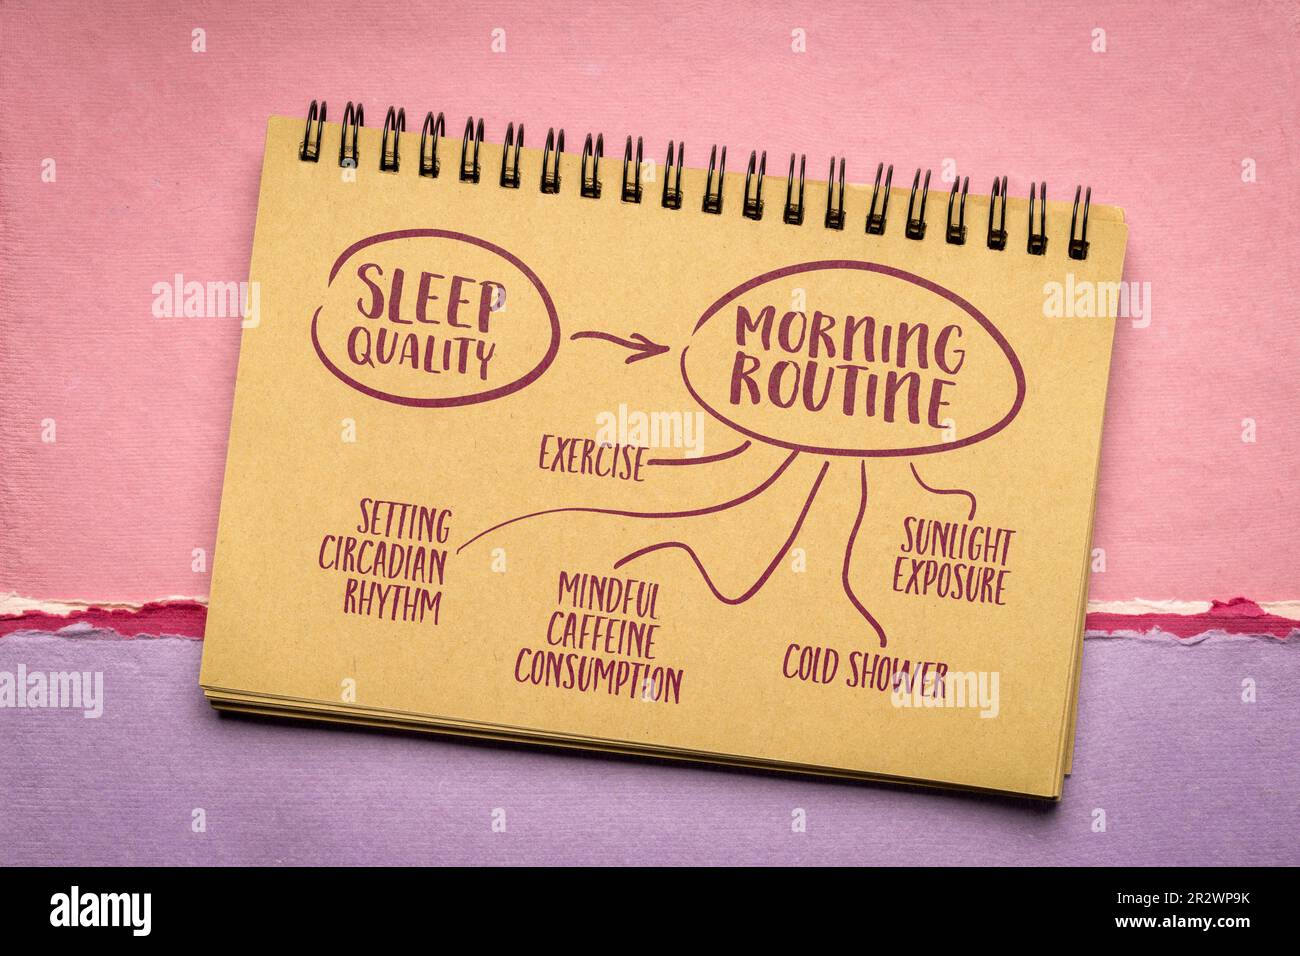 Morgenroutine zur Einrichtung des zirkadianen Rhythmus und Verbesserung der Schlafqualität in der Nacht - Mindmap-Skizze in einem Notizbuch, gesunder Lebensstil, Selbstpflege und Person Stockfoto